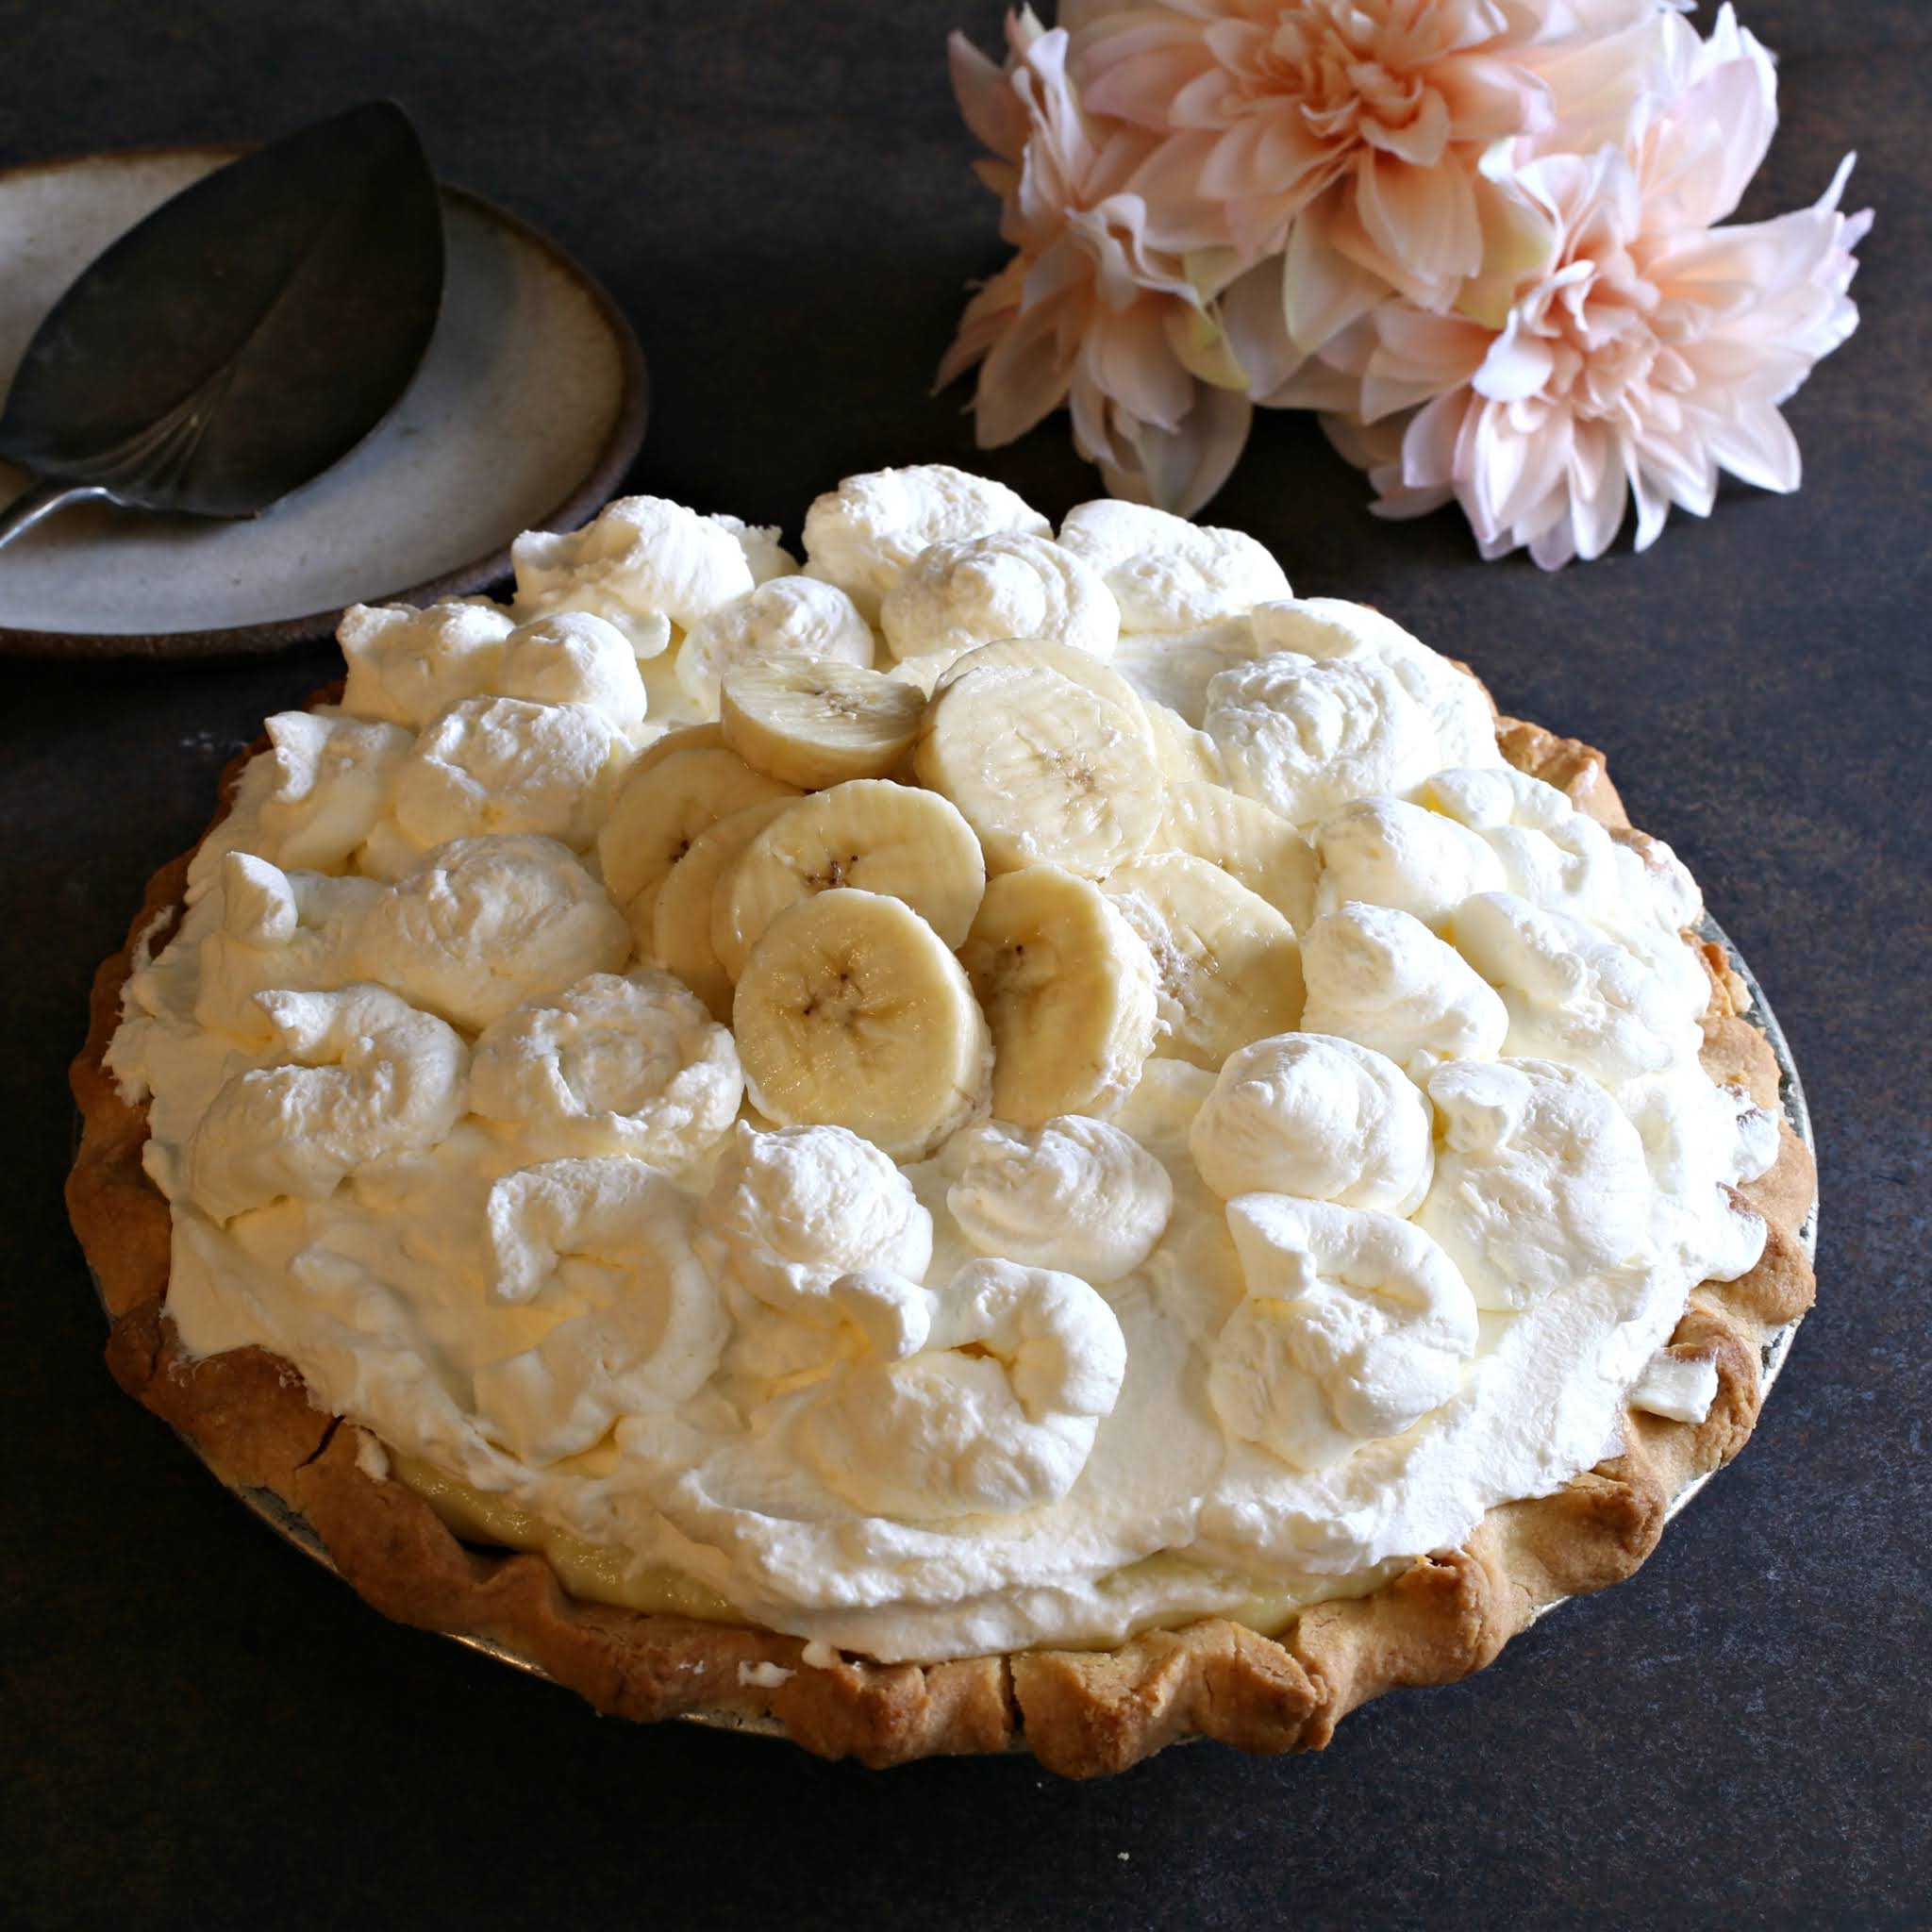 Banana cream pie made with shortcrust pastry and banana pastry cream